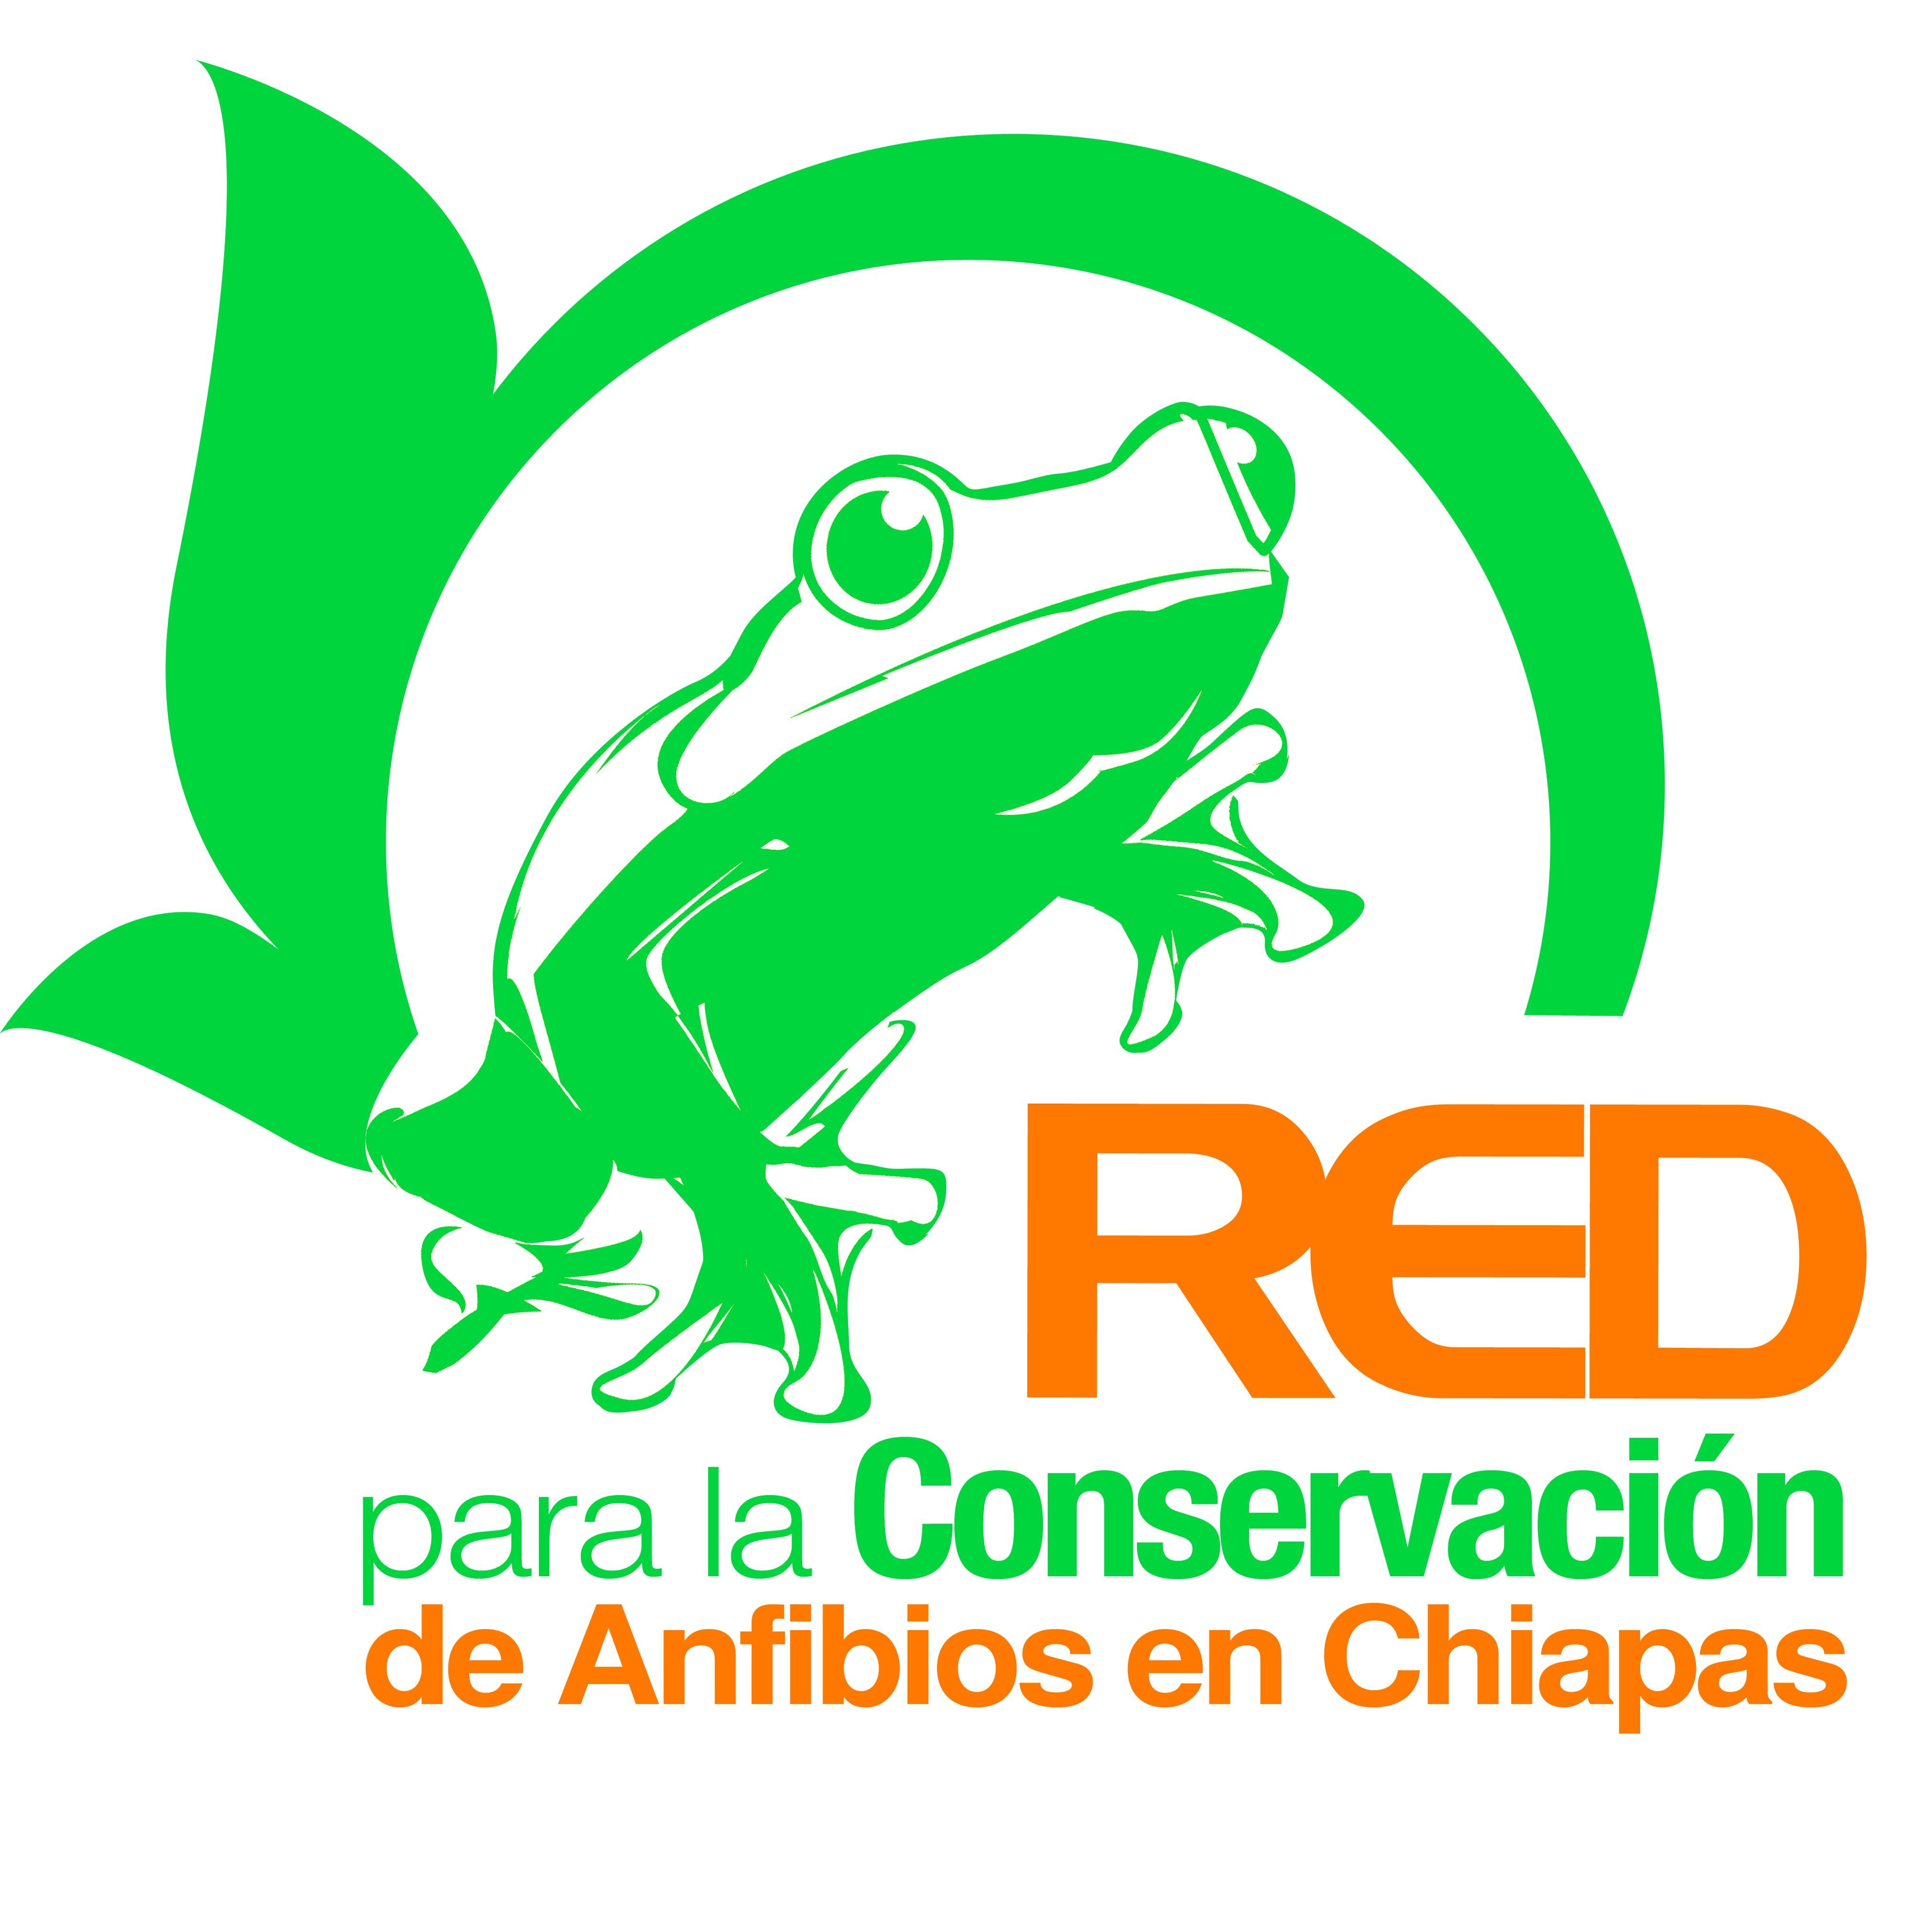 Se conforma por Instituciones y miembros de la Sociedad que se dedica a la divulgación y acciones enfocadas a la conservación de los Anfibios en Chiapas